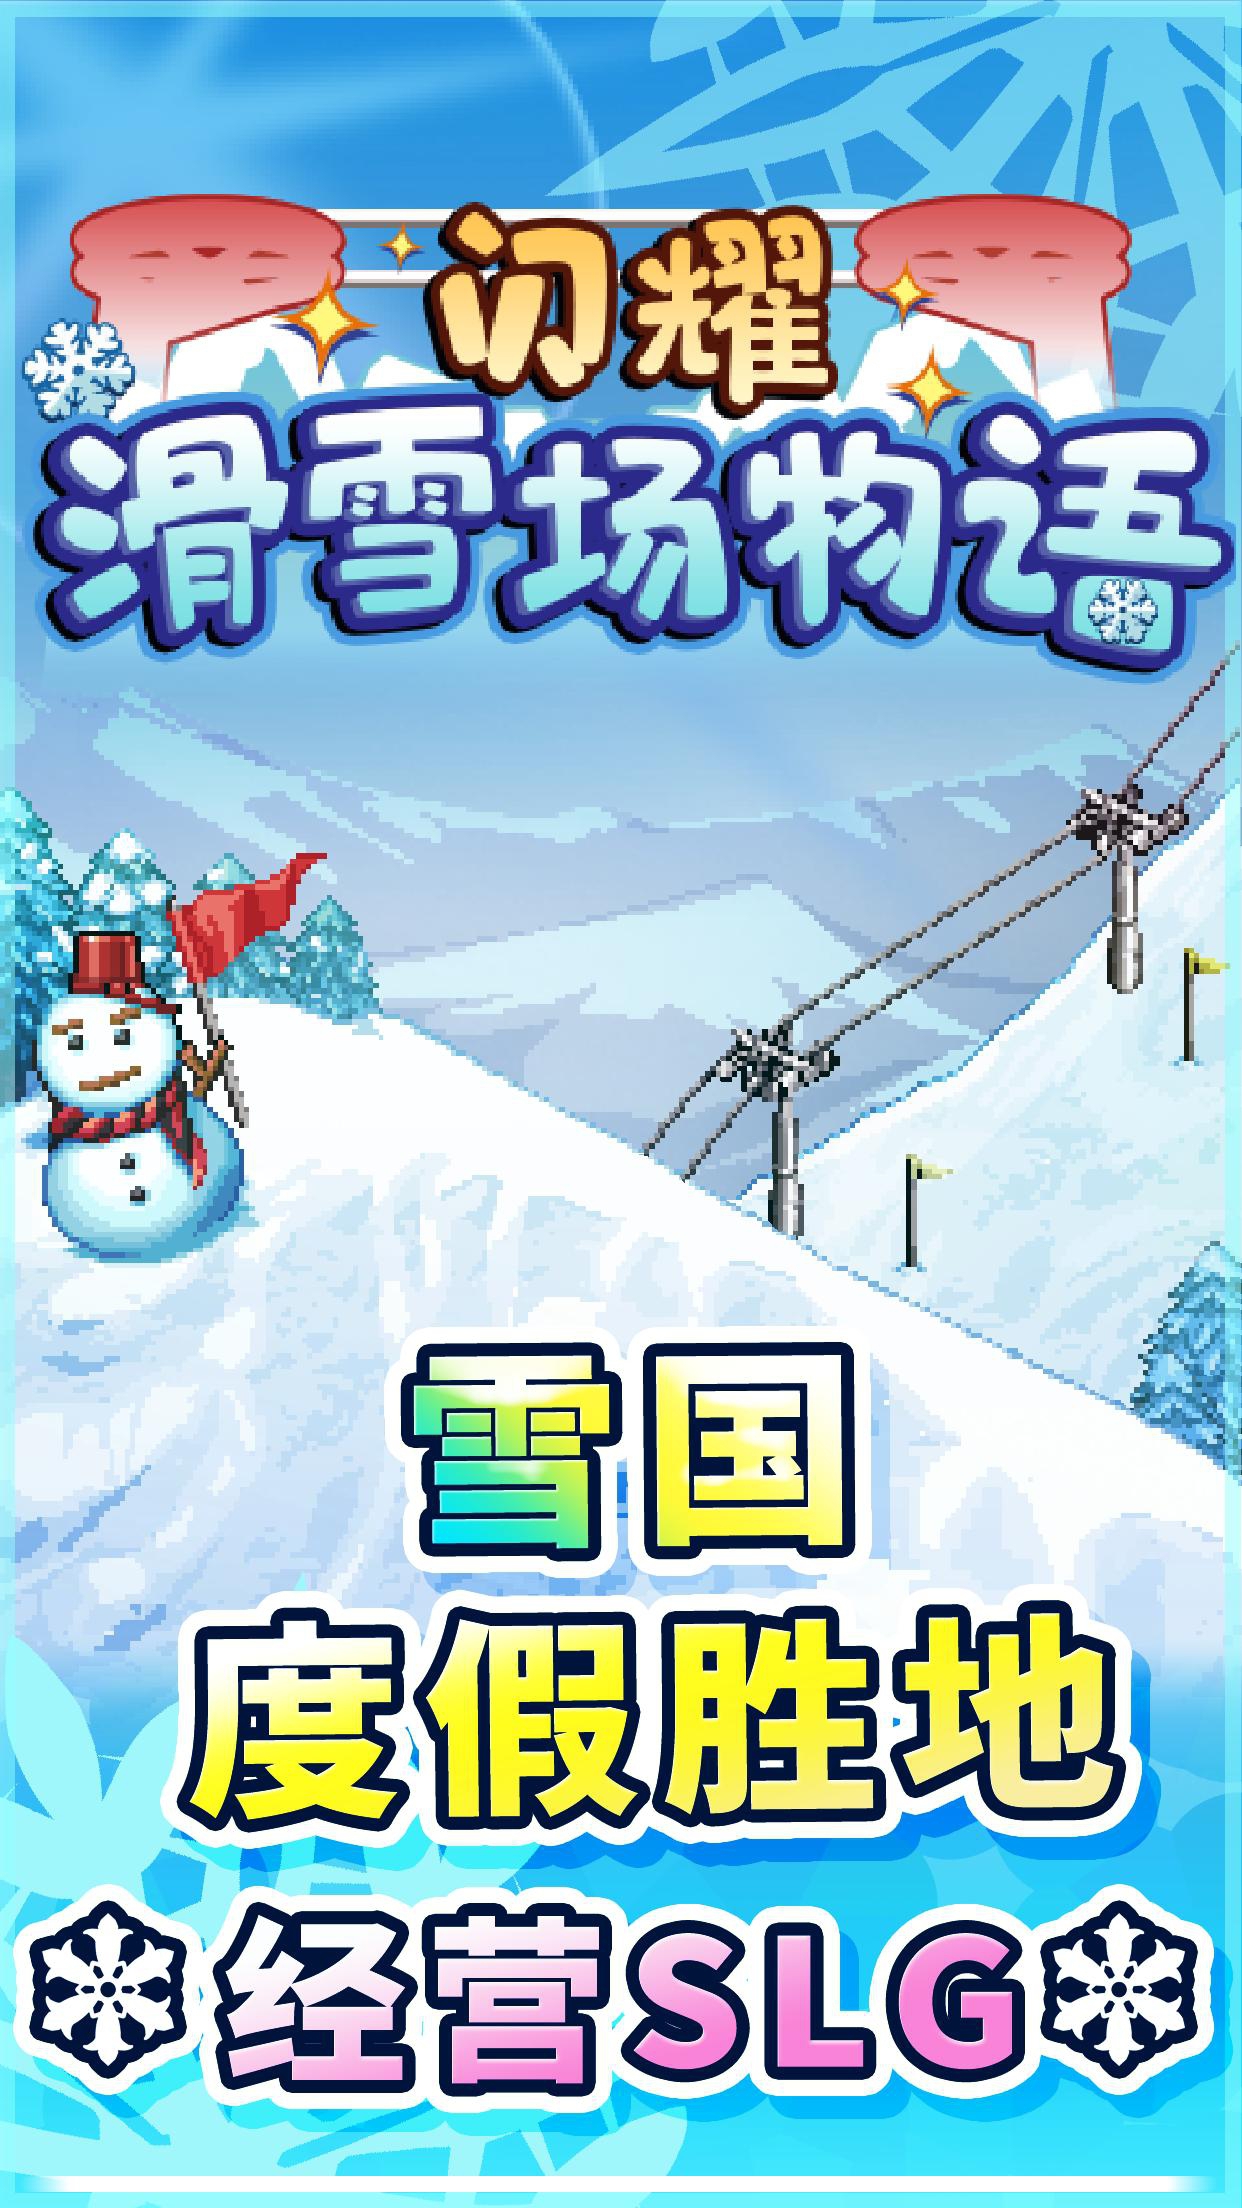 闪耀滑雪场物语免费版手机单机游戏截图四